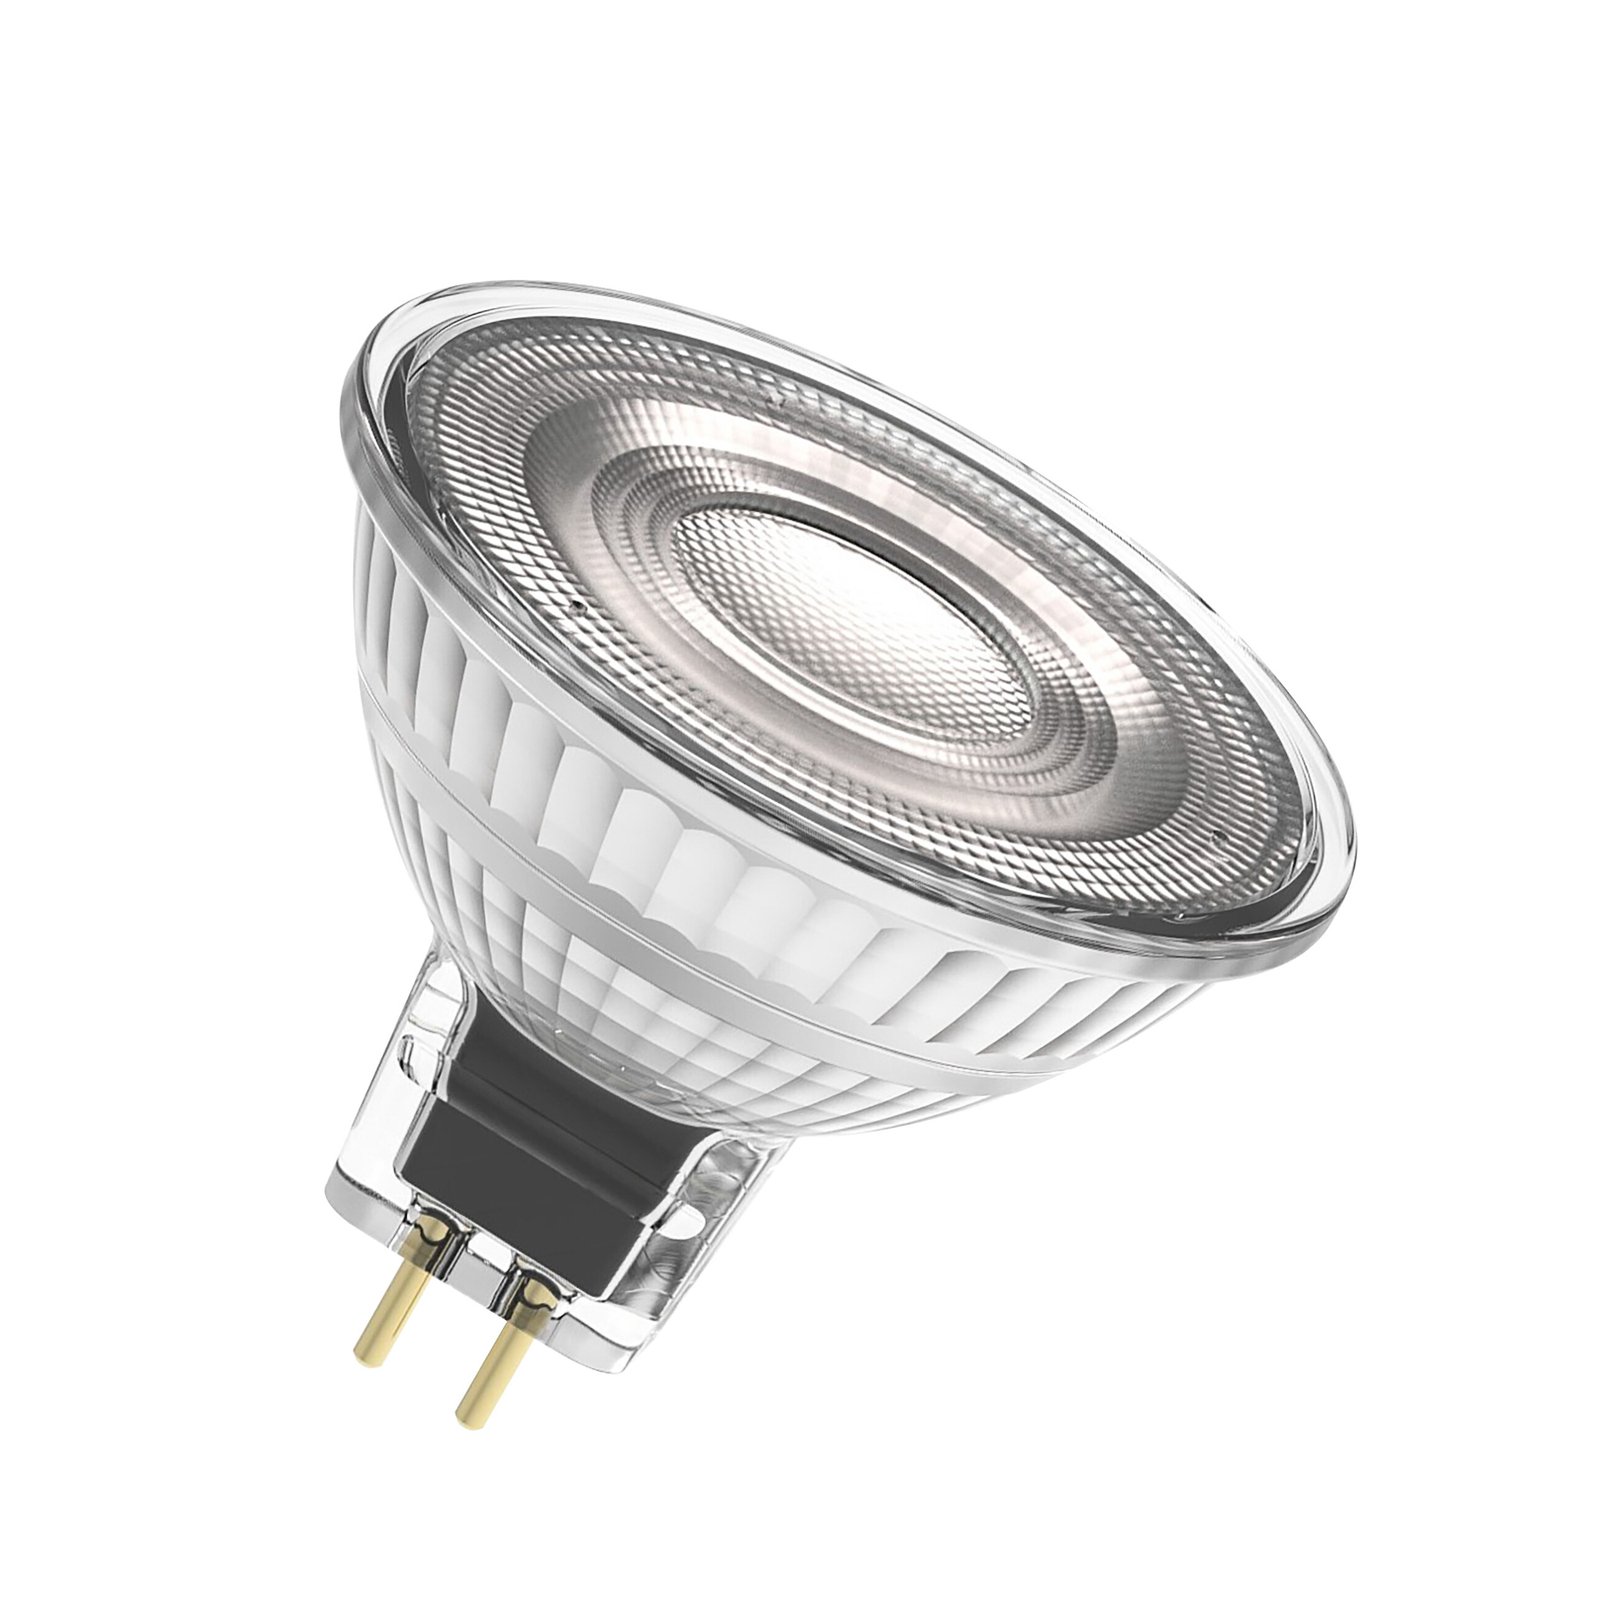 OSRAM LED bulb, GU5.3, 2.6 W, 12 V, 2,700 K, 120°